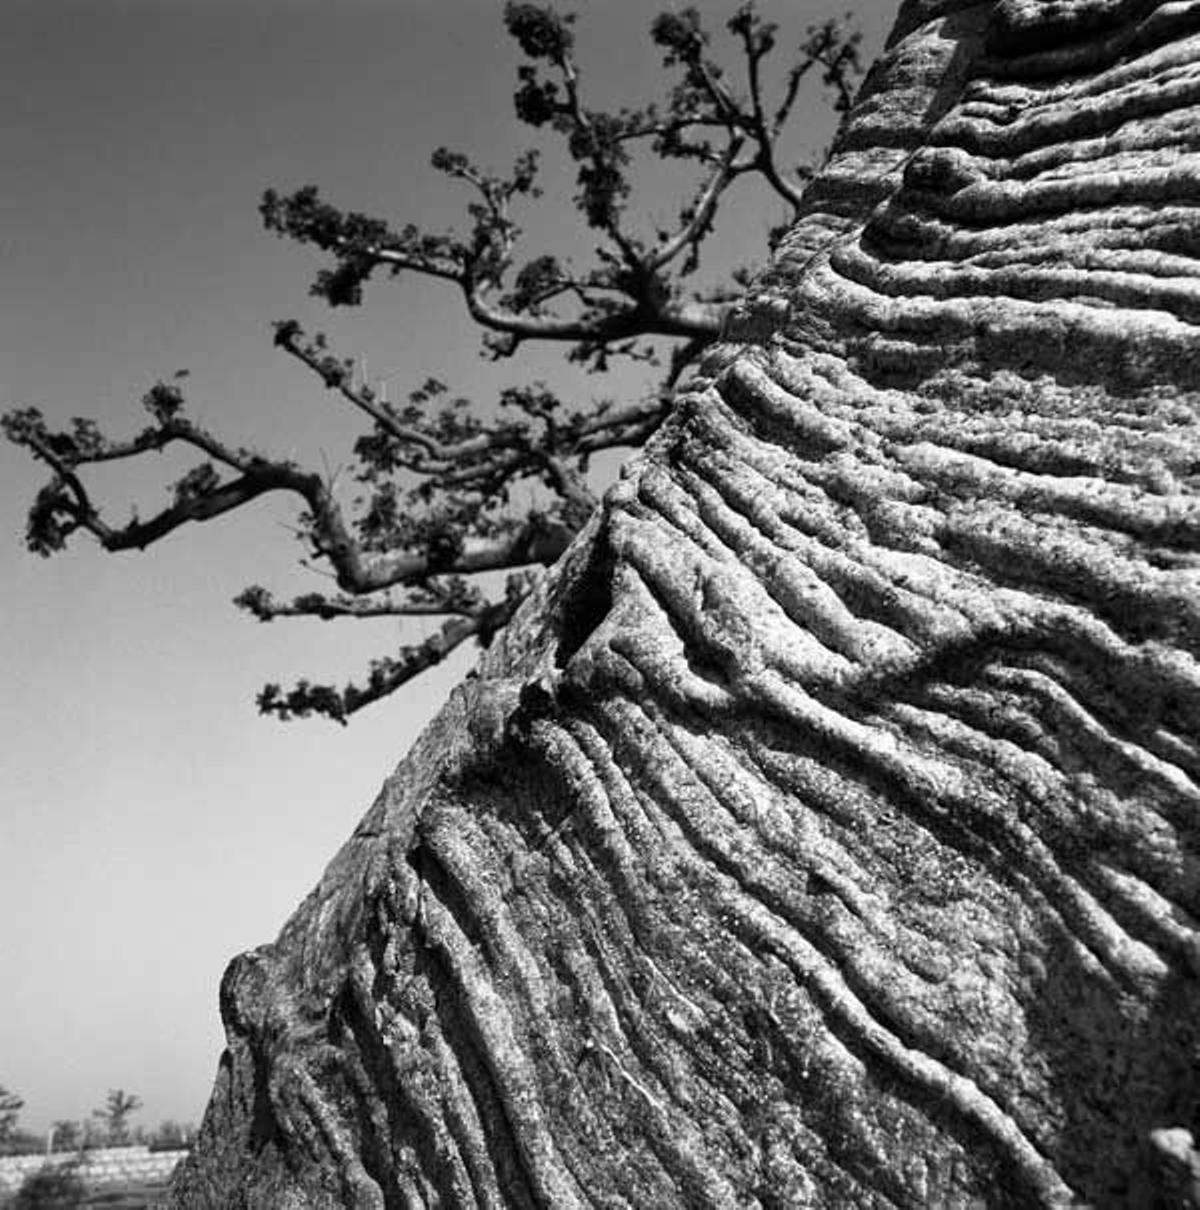 La textura de la superficie de este Baobab muestra los incisiones que los pastores realizan para hacer cuerdas con las que atar a los animales.